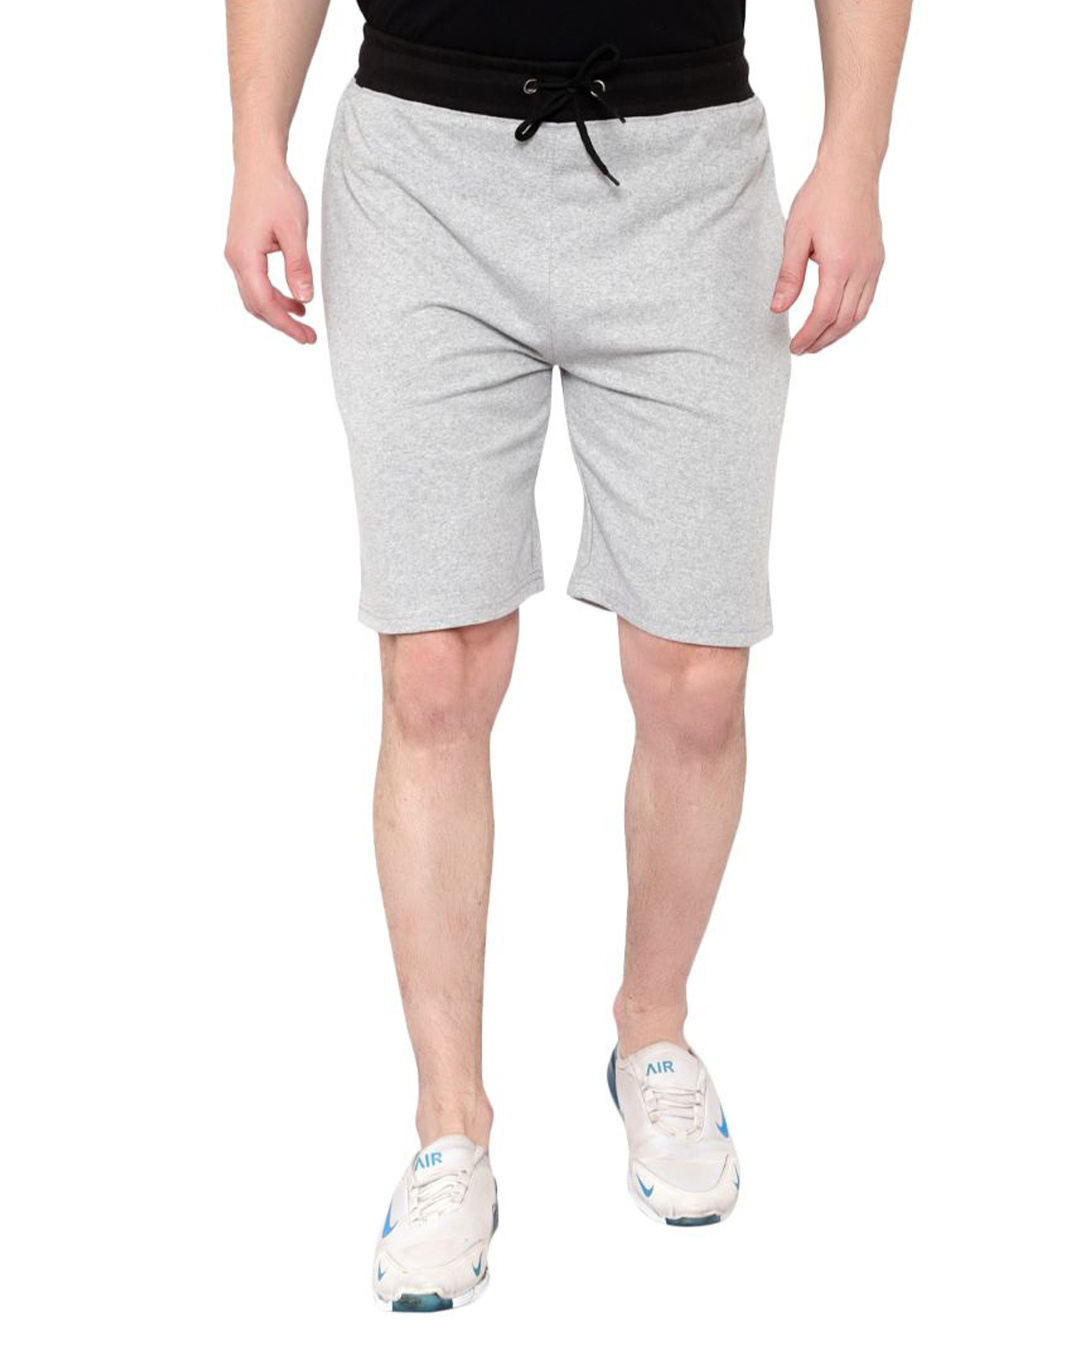 Buy Men's Grey Cotton Shorts for Men Online at Bewakoof